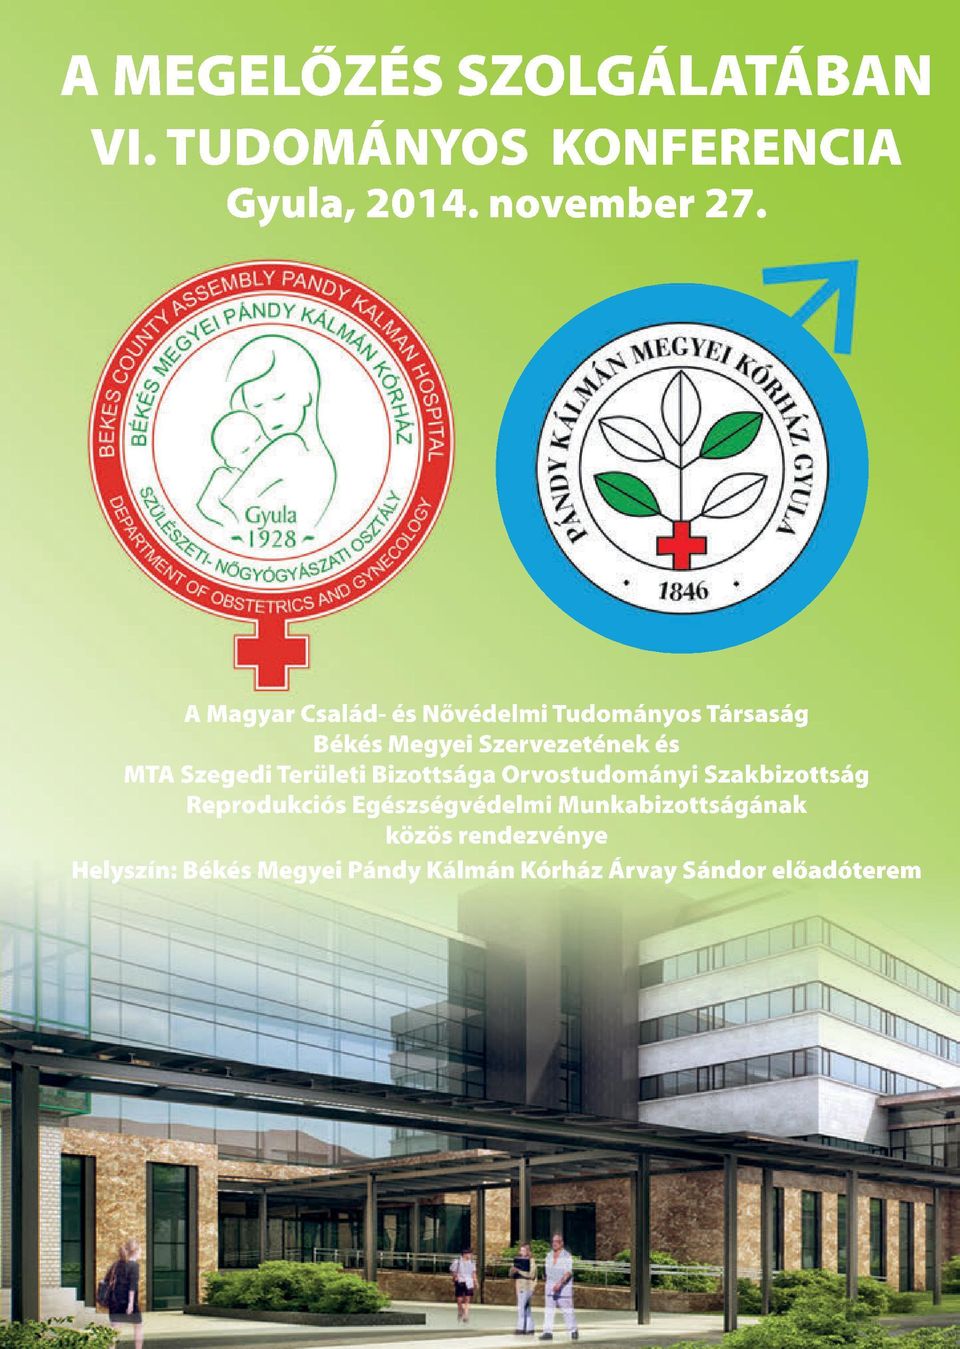 Szegedi Területi Bizottsága Orvostudományi Szakbizottság Reprodukciós Egészségvédelmi